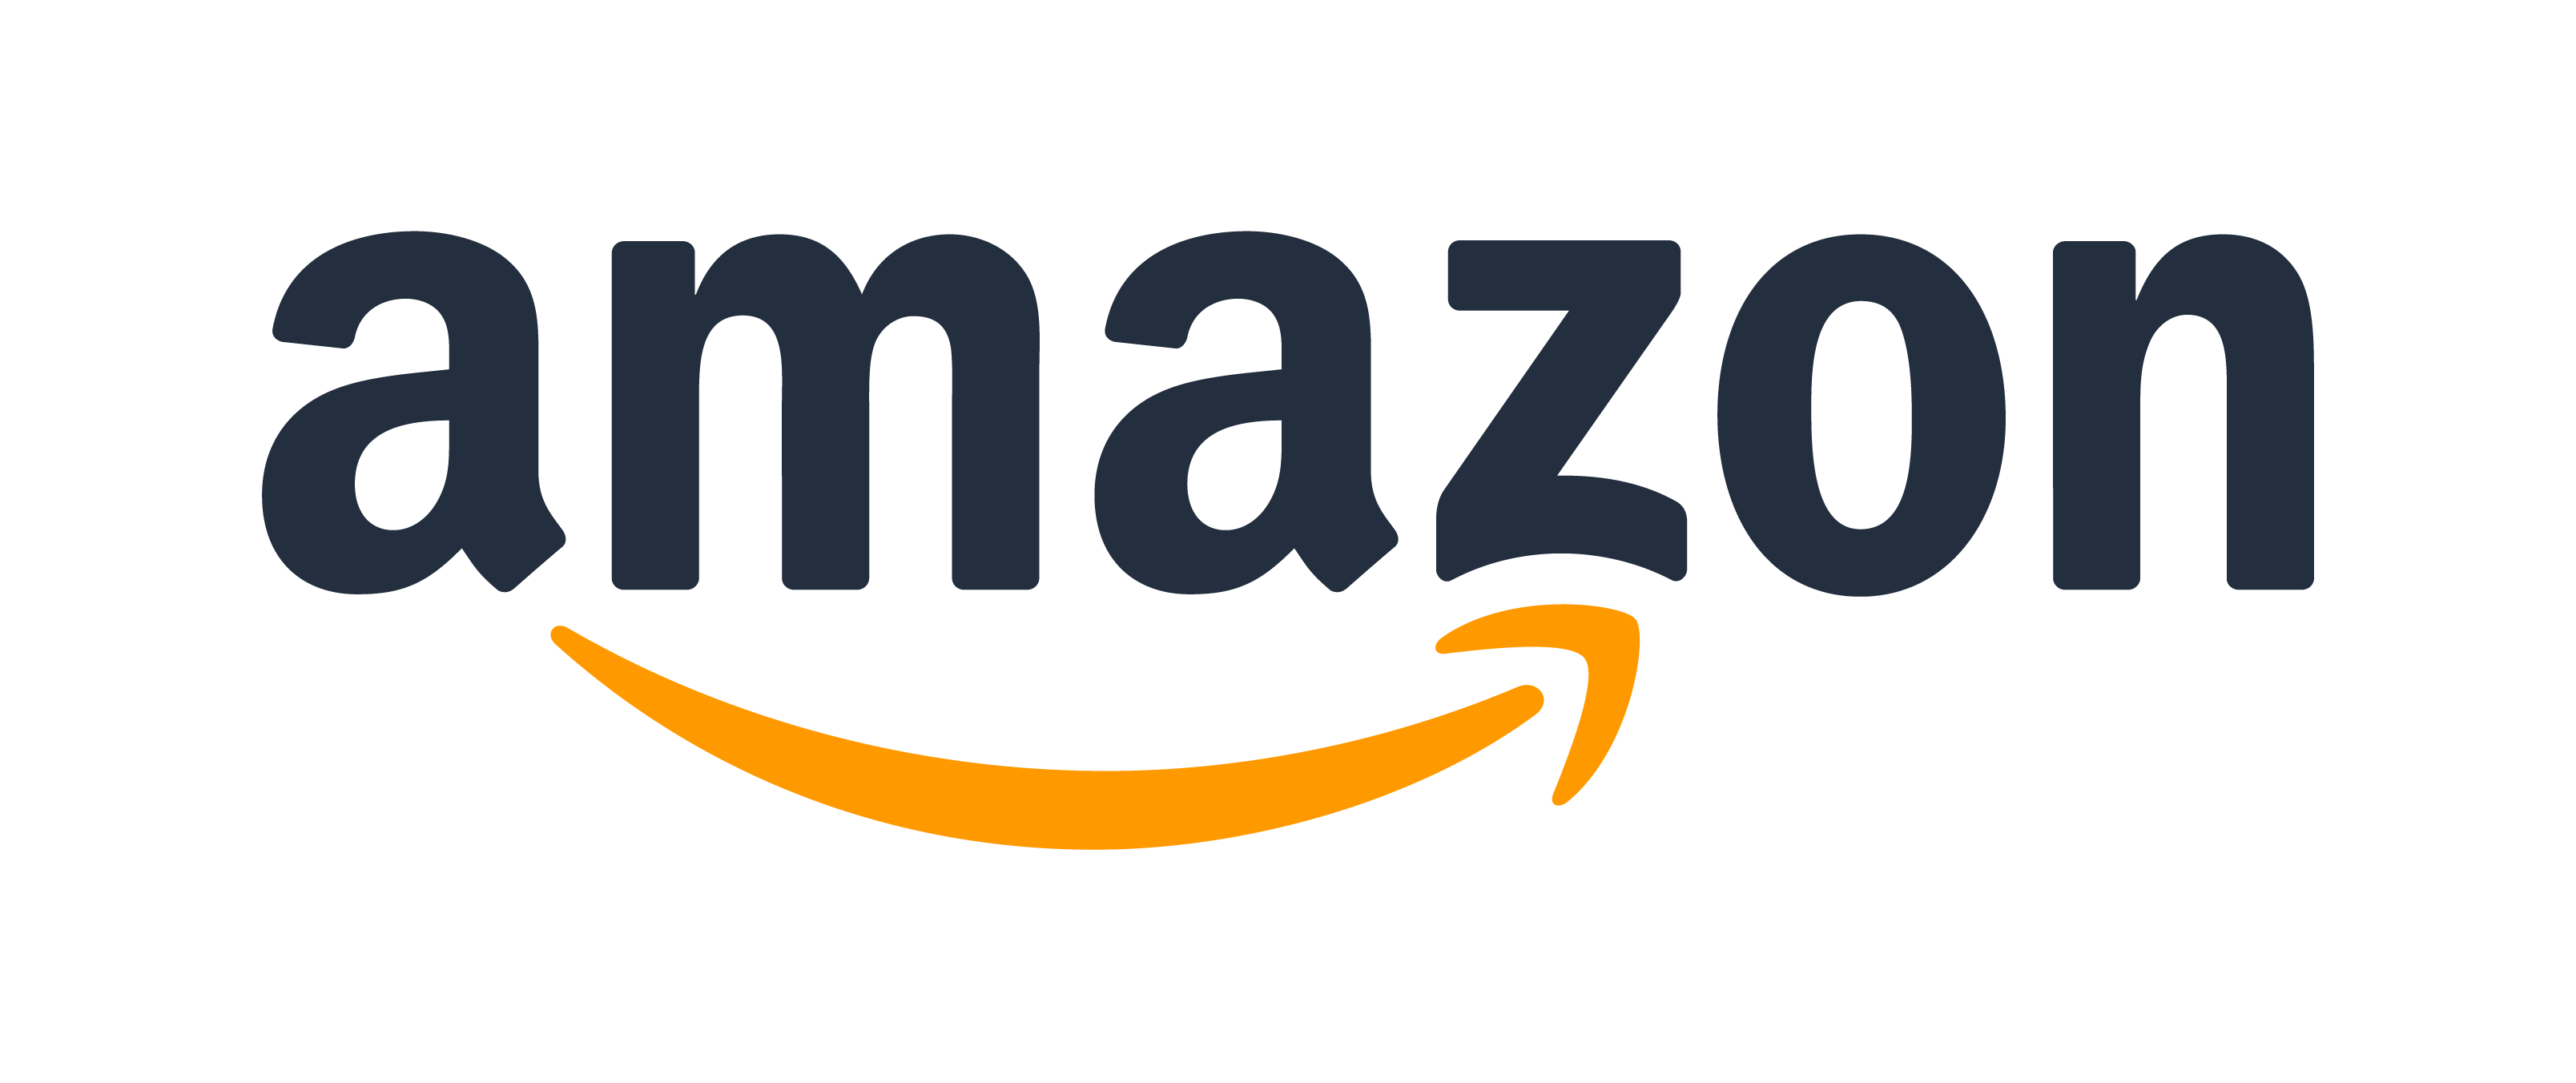 Amazon logo courtesy of Amazon corporate